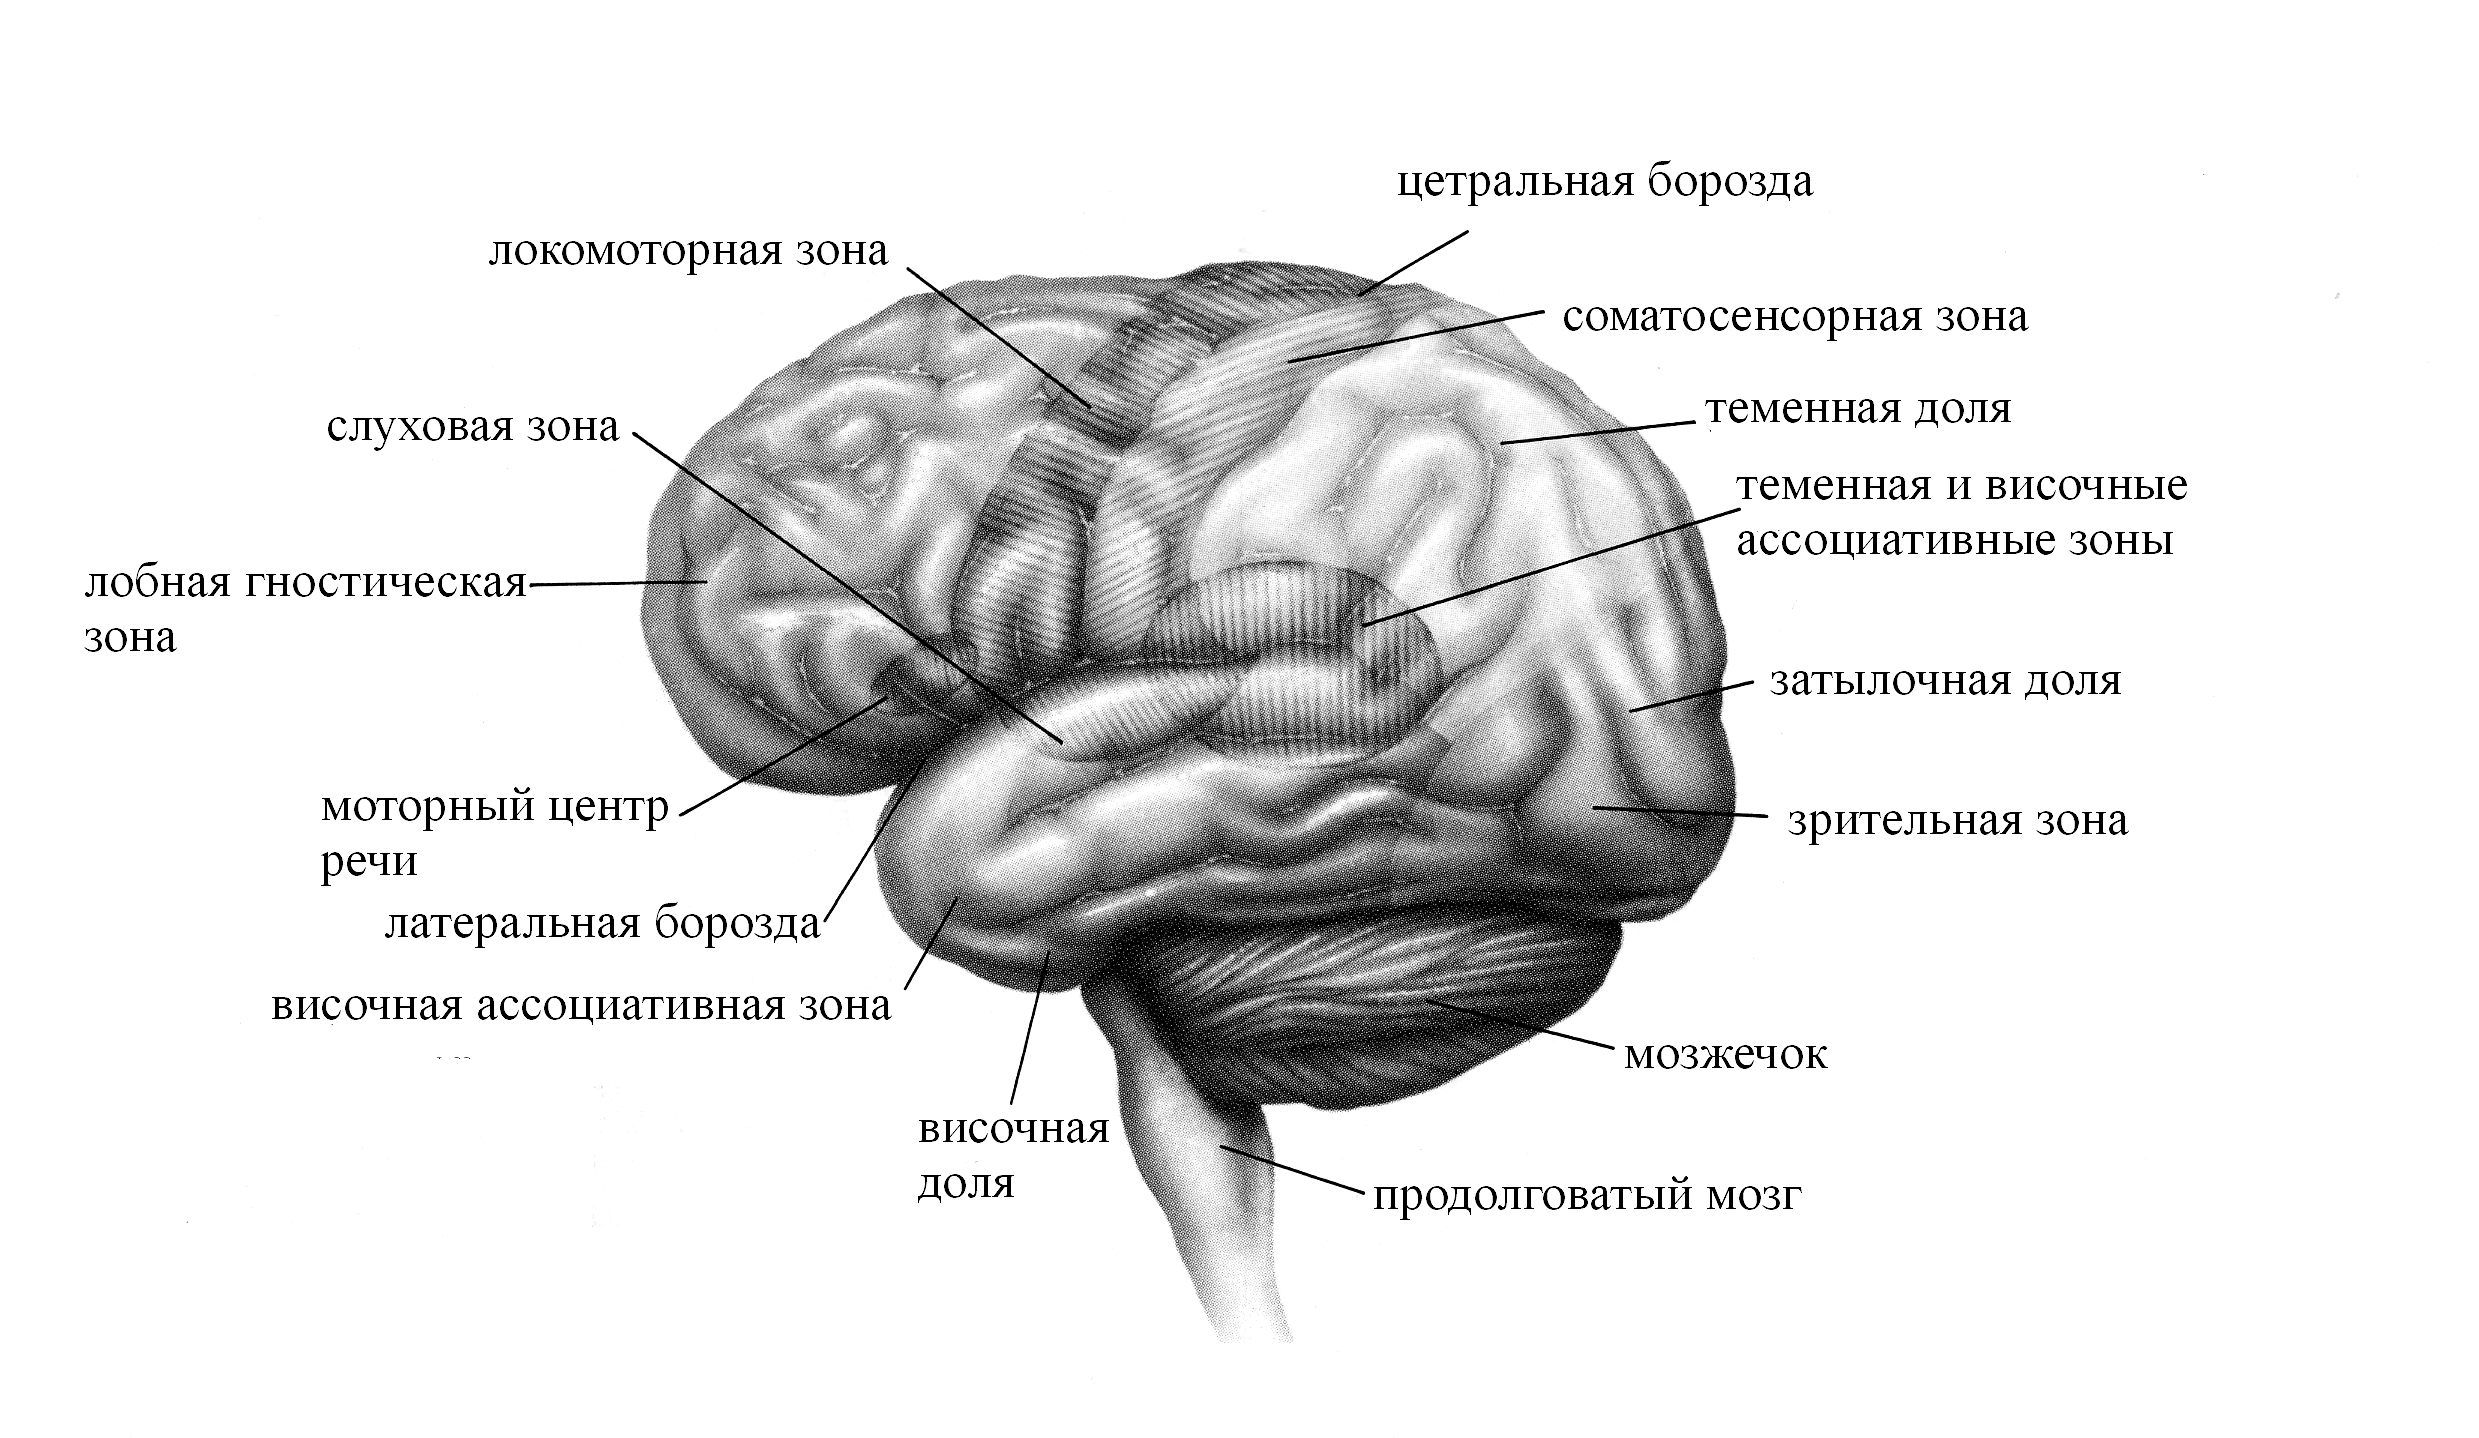 Основные зоны коры мозга